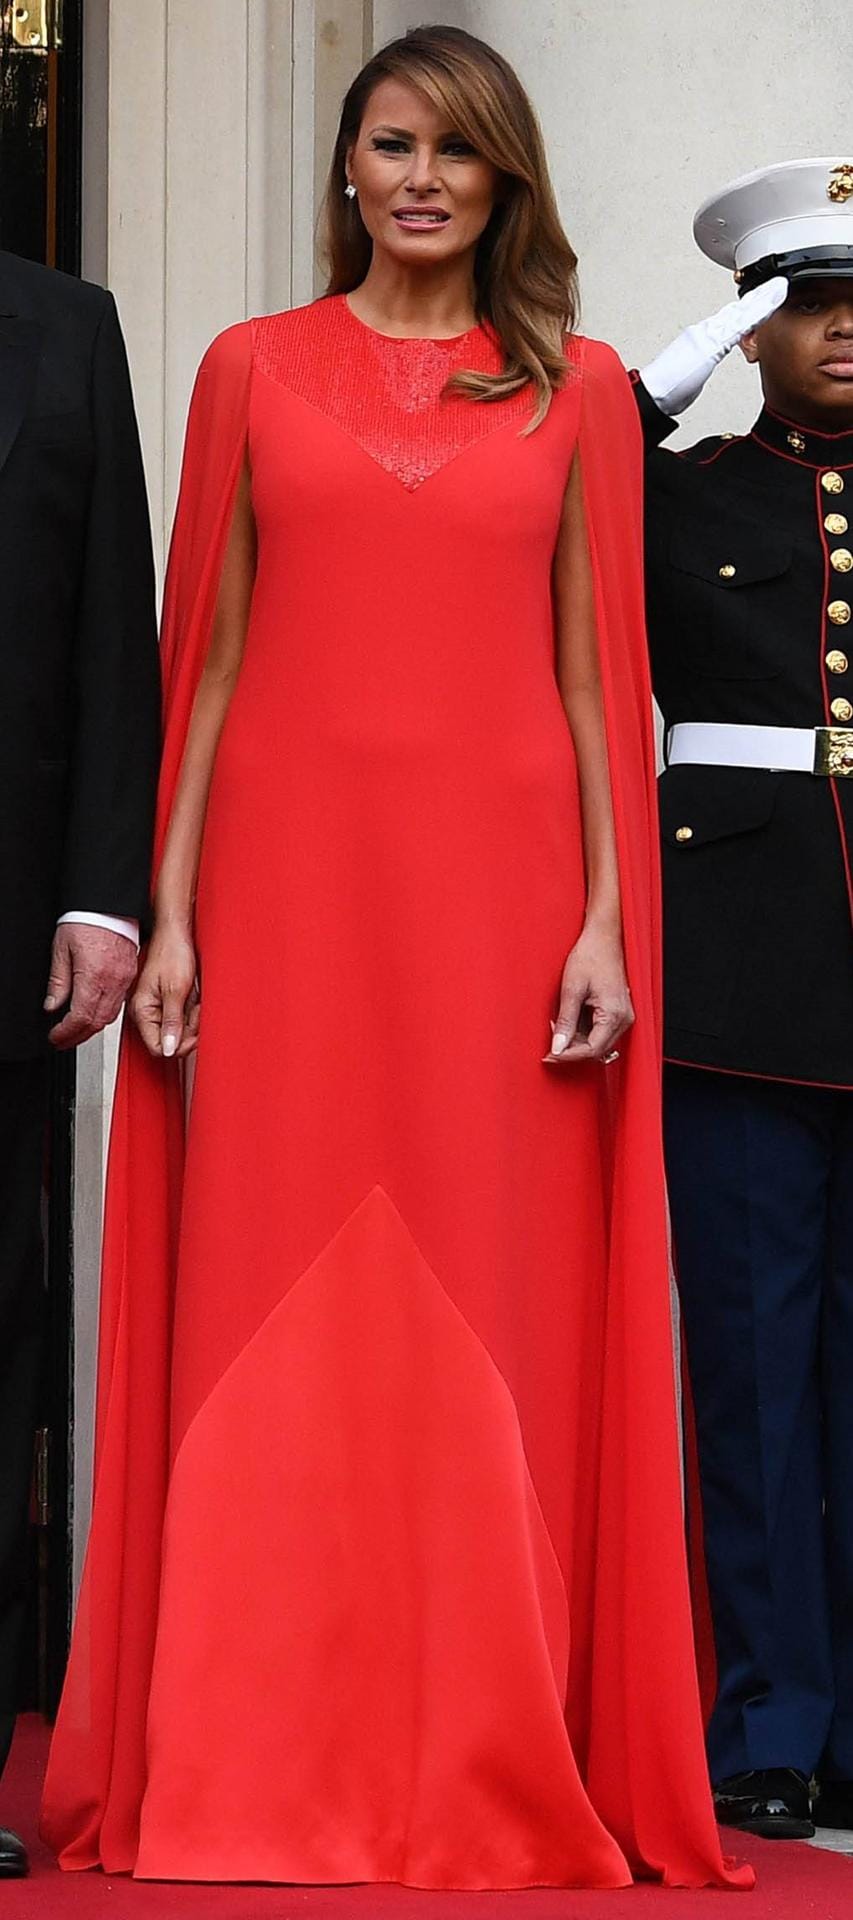 Melania diesmal in knalliger Signalfarbe: Die 49-Jährige trägt eine auffällige rote Robe von Givenchy. Beim Dinner in London fällt sie mit ihrem Cape-Kleid auf.